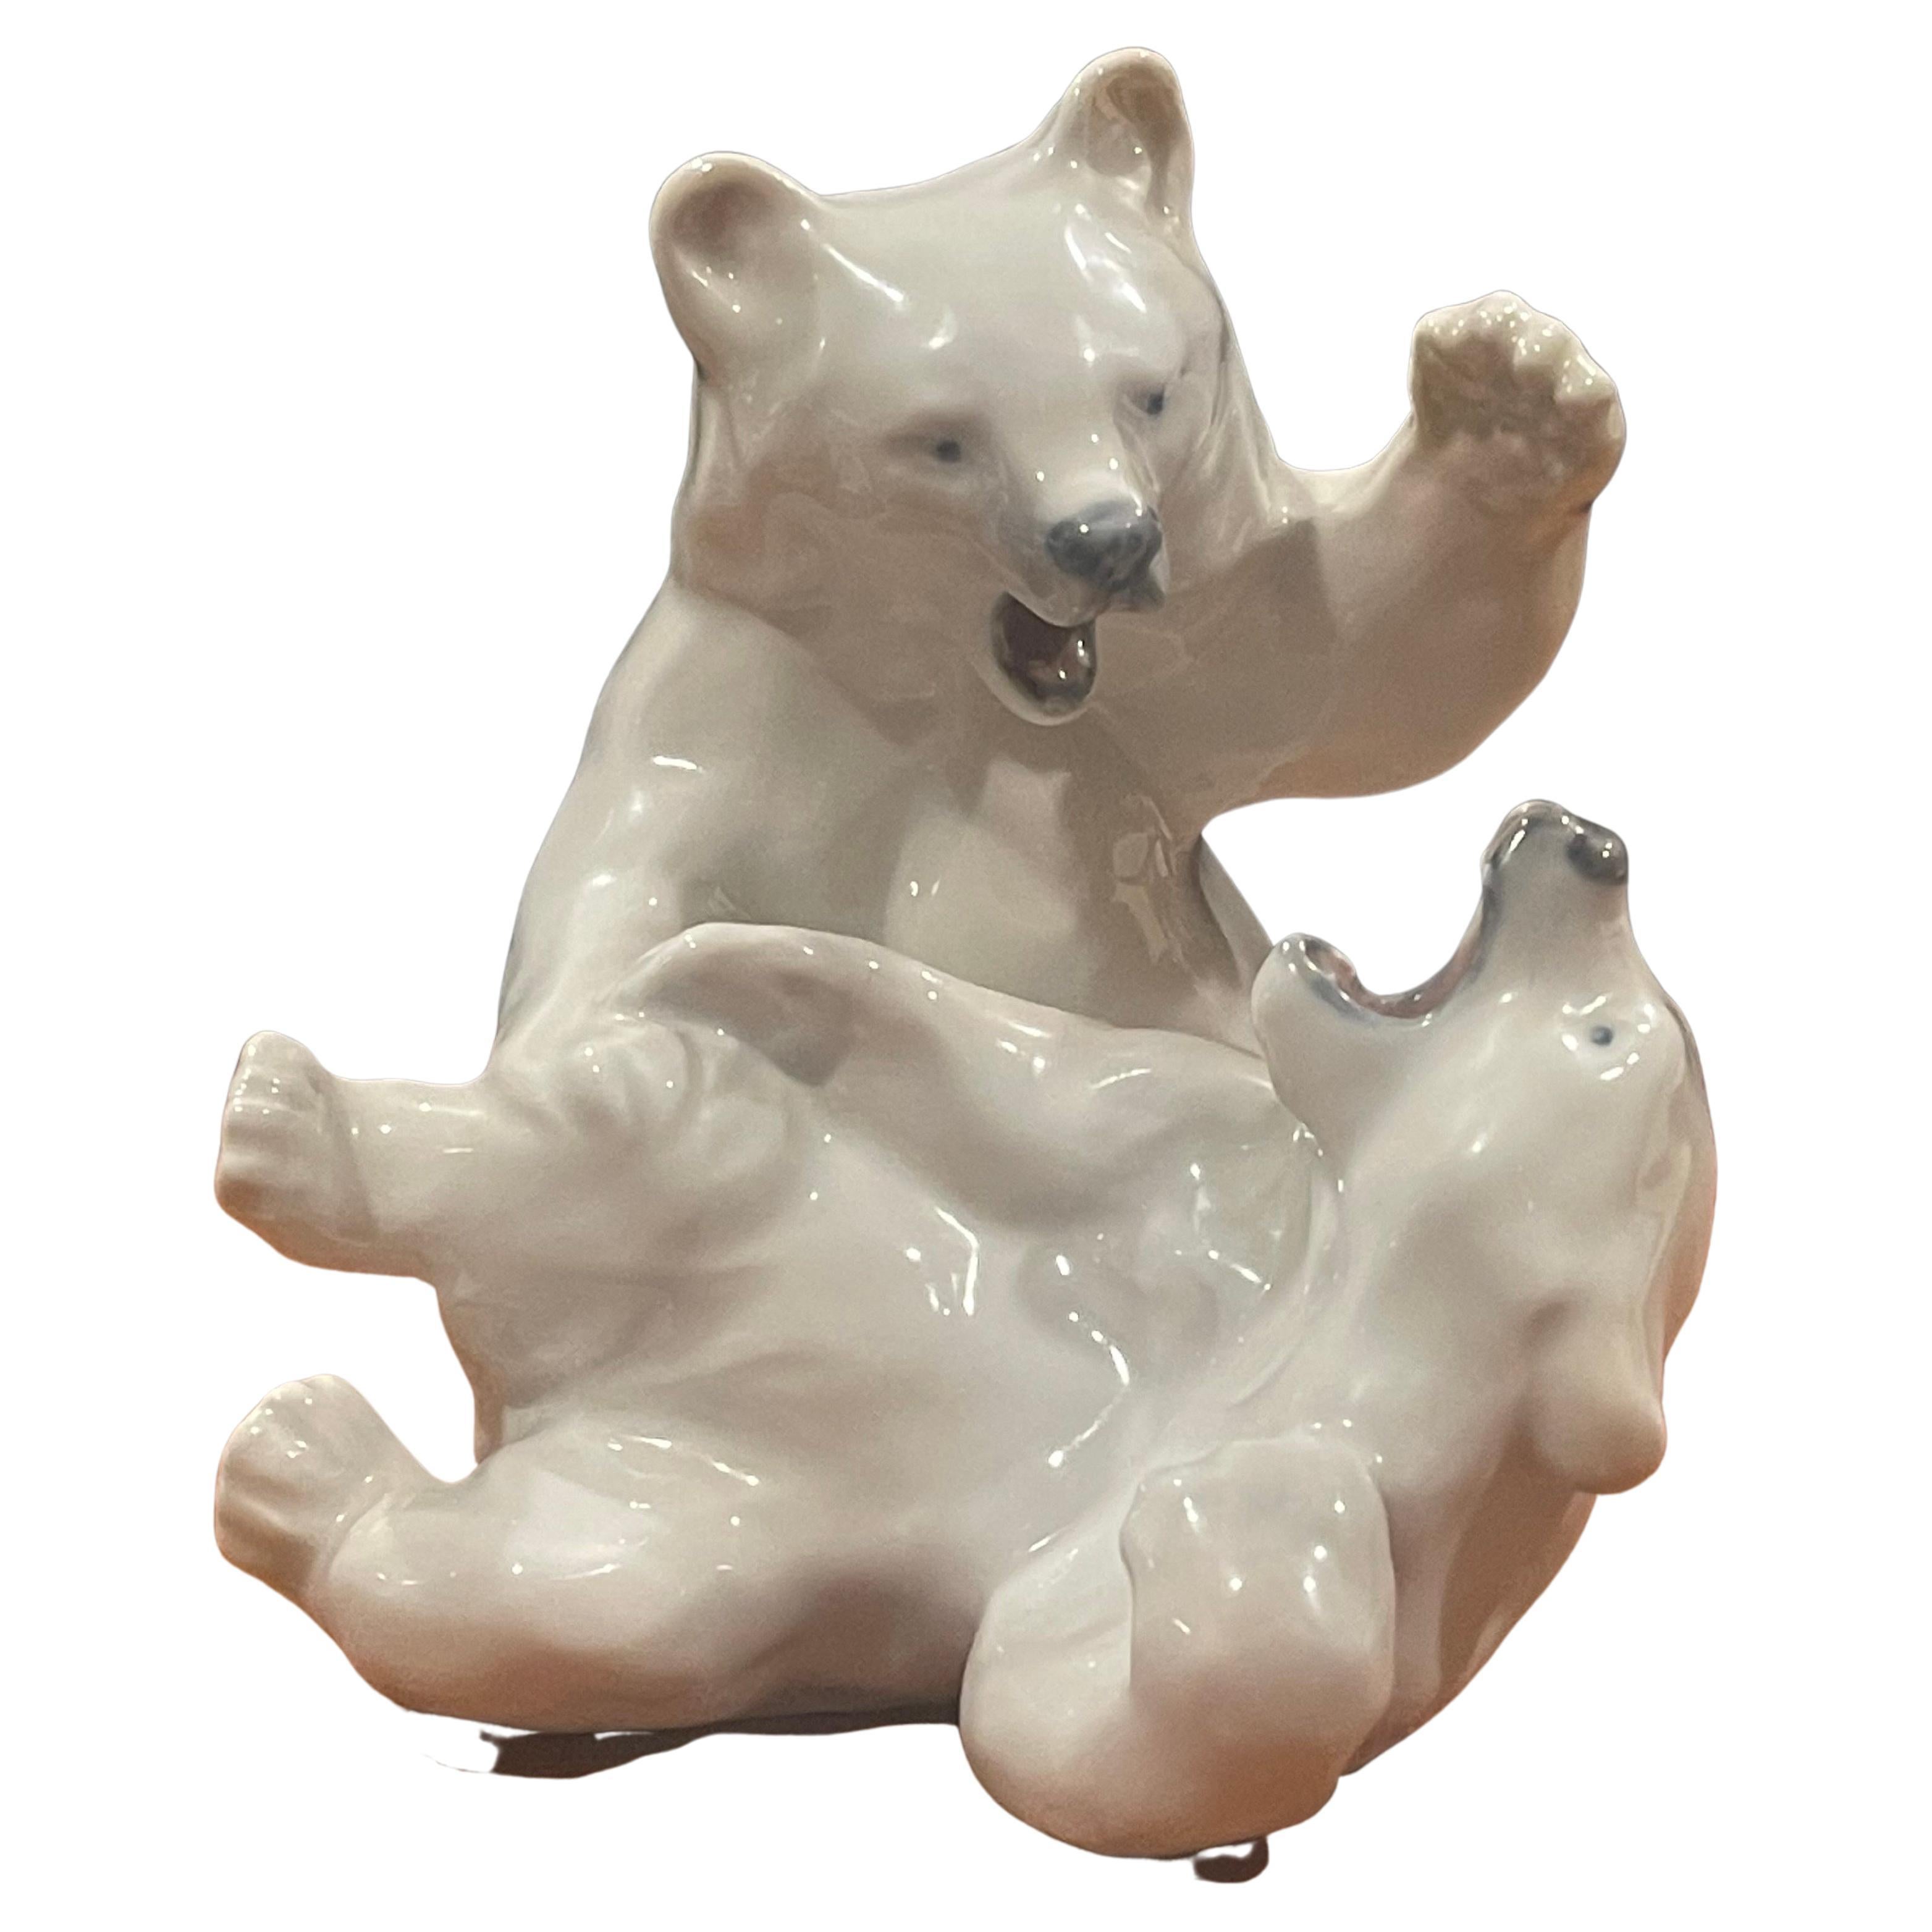 Vintage zwei Stück Porzellan kämpfen Eisbären Skulptur von Royal Copenhagen, ca. 1930's. Das Stück ist in sehr gutem Vintage-Zustand ohne Chips oder Risse und misst 9,5 